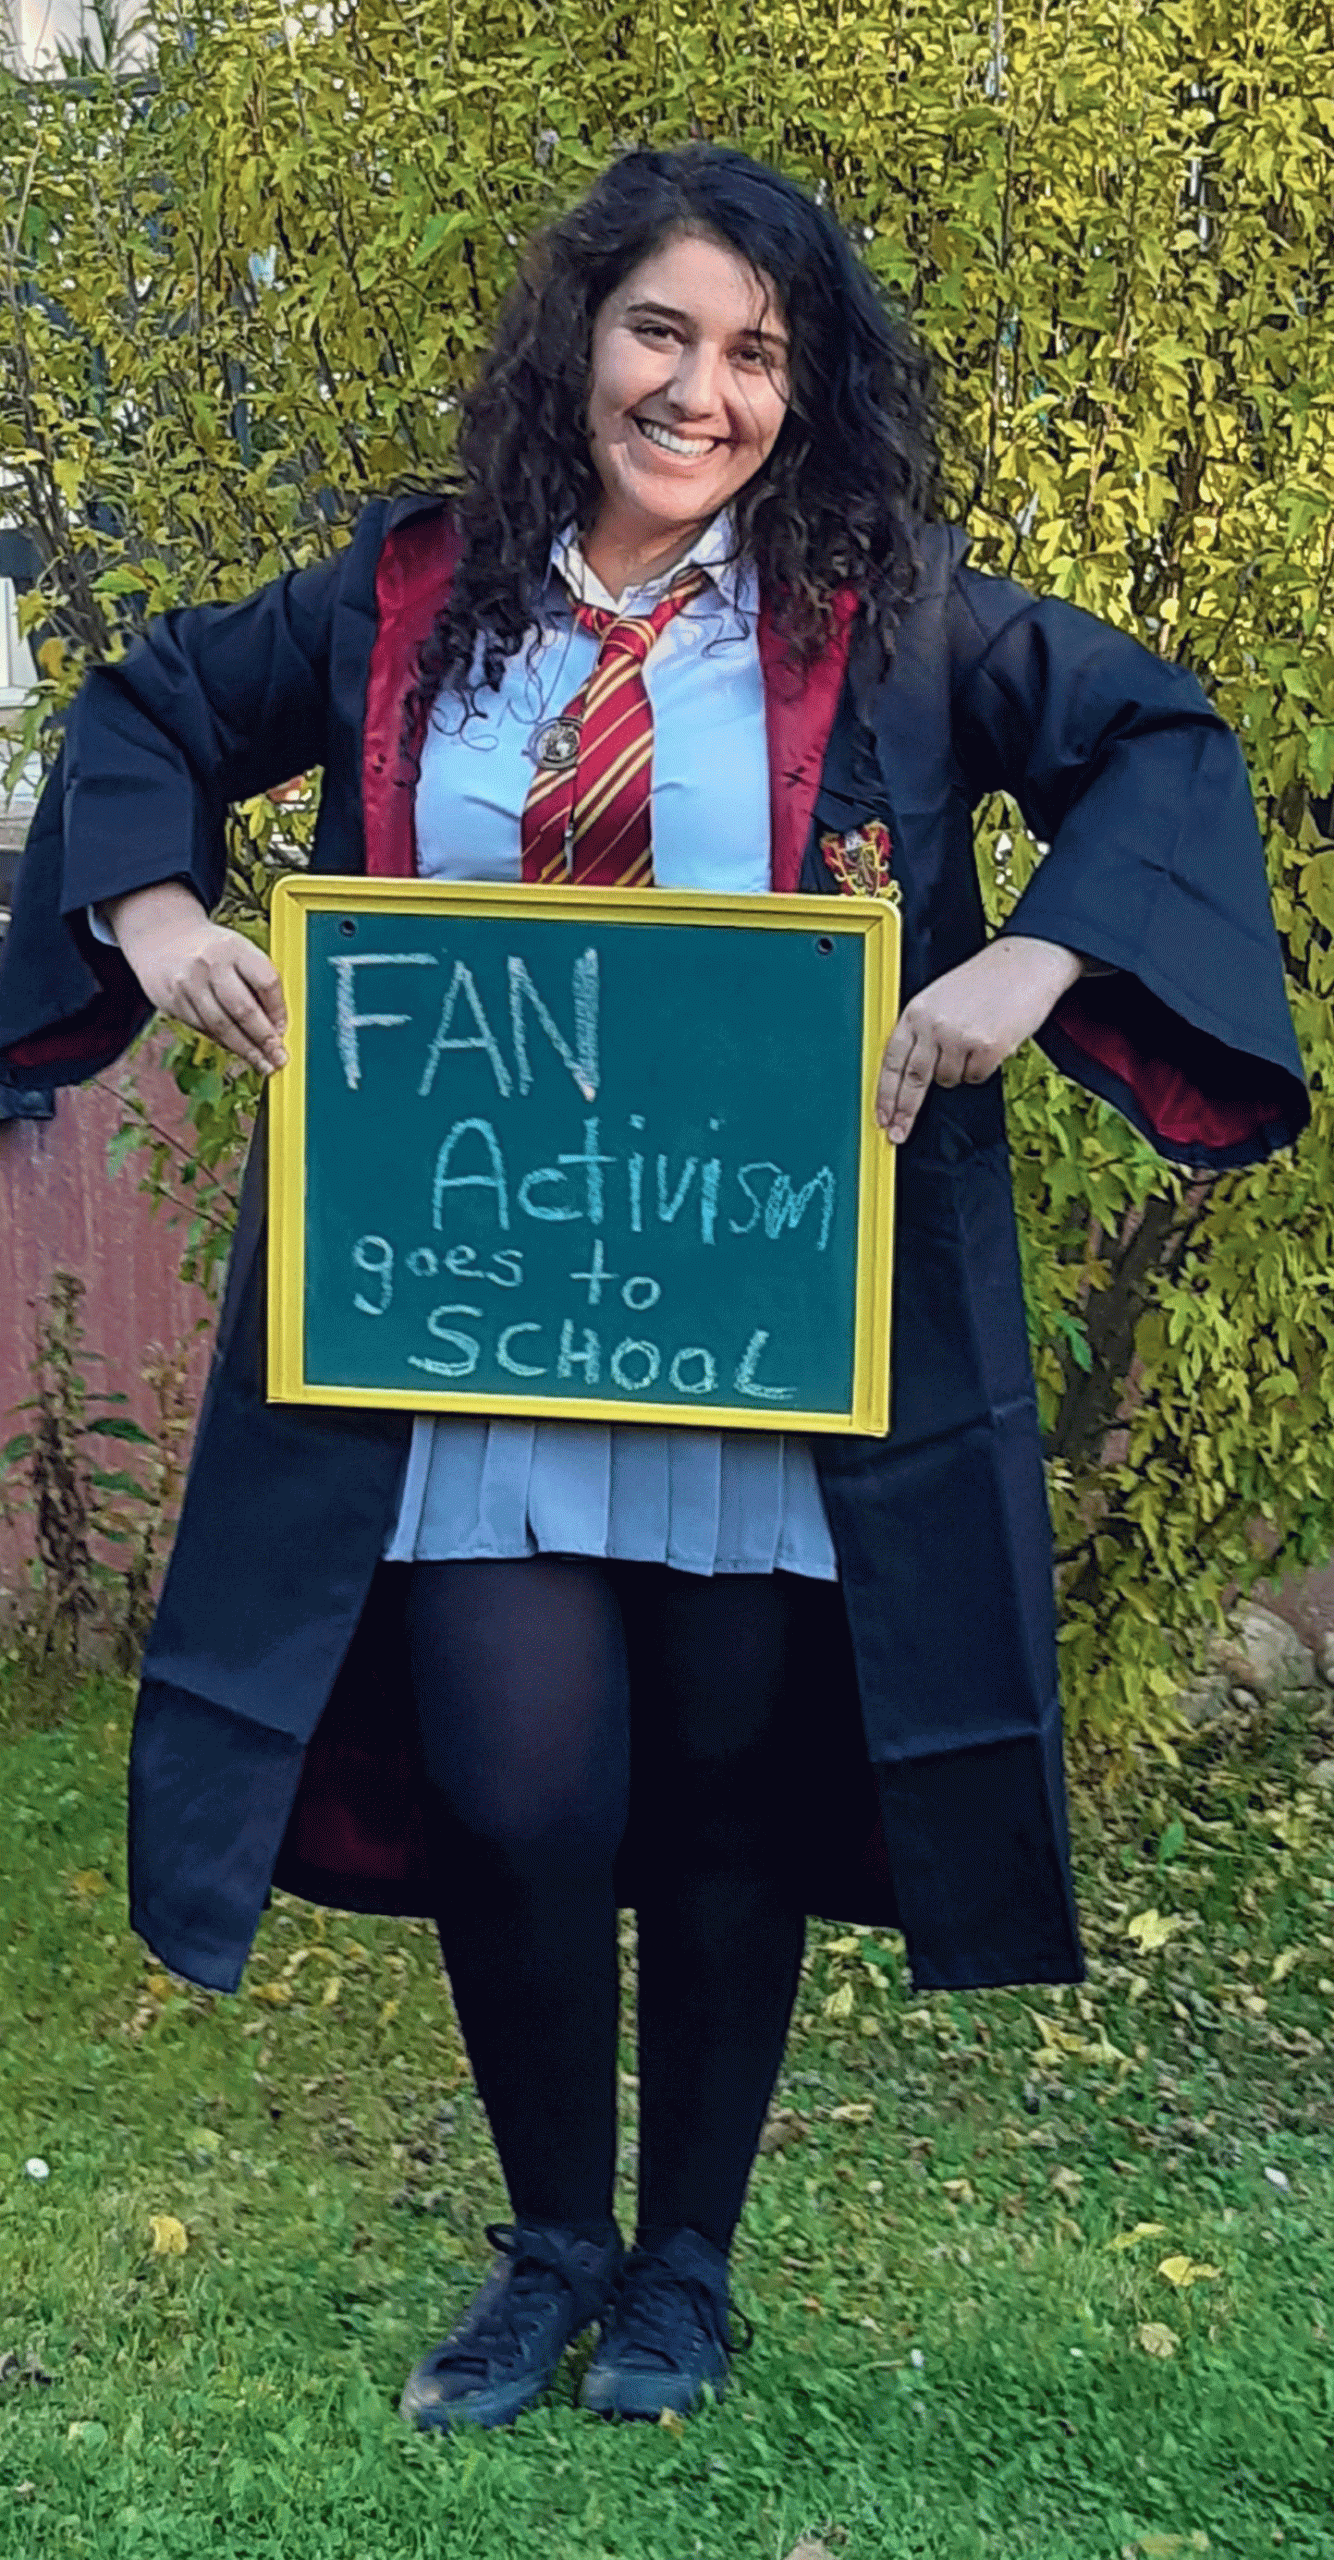 Junge Dame in Harry Potter Outfit hält eine kleine Tafel, auf der "Fan activism goes to school" steht